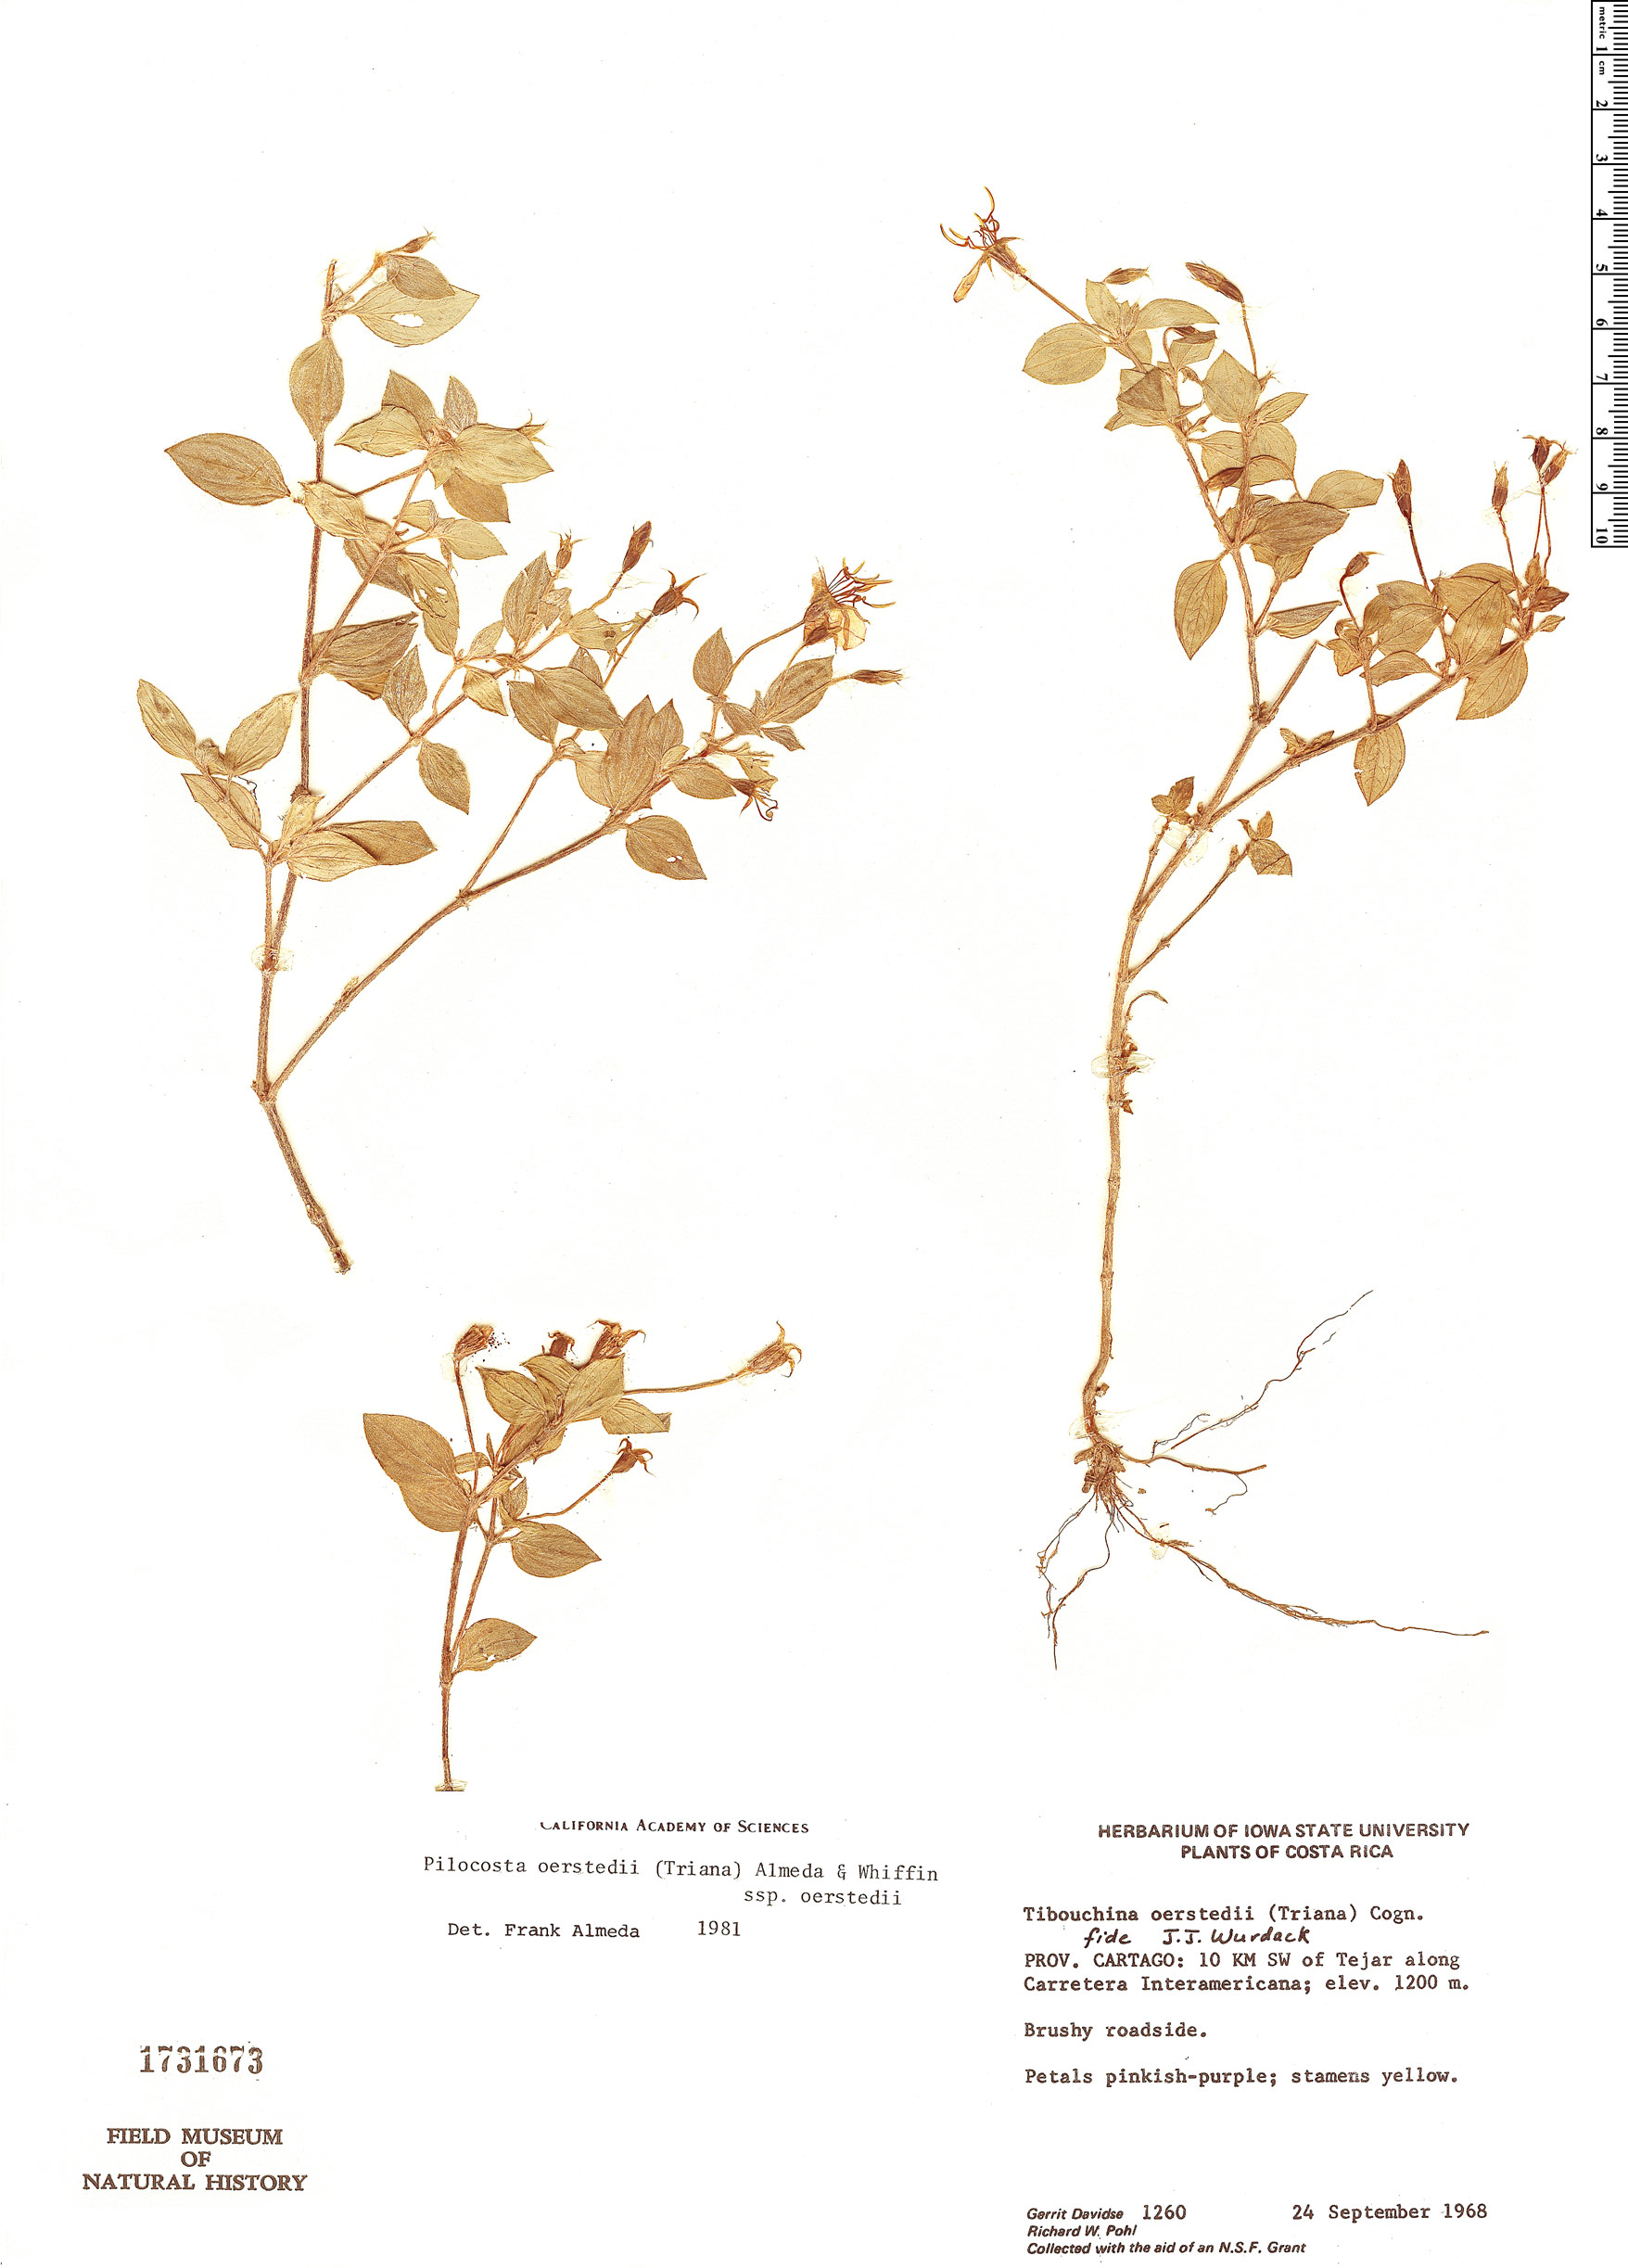 Pilocosta oerstedii subsp. oerstedii image